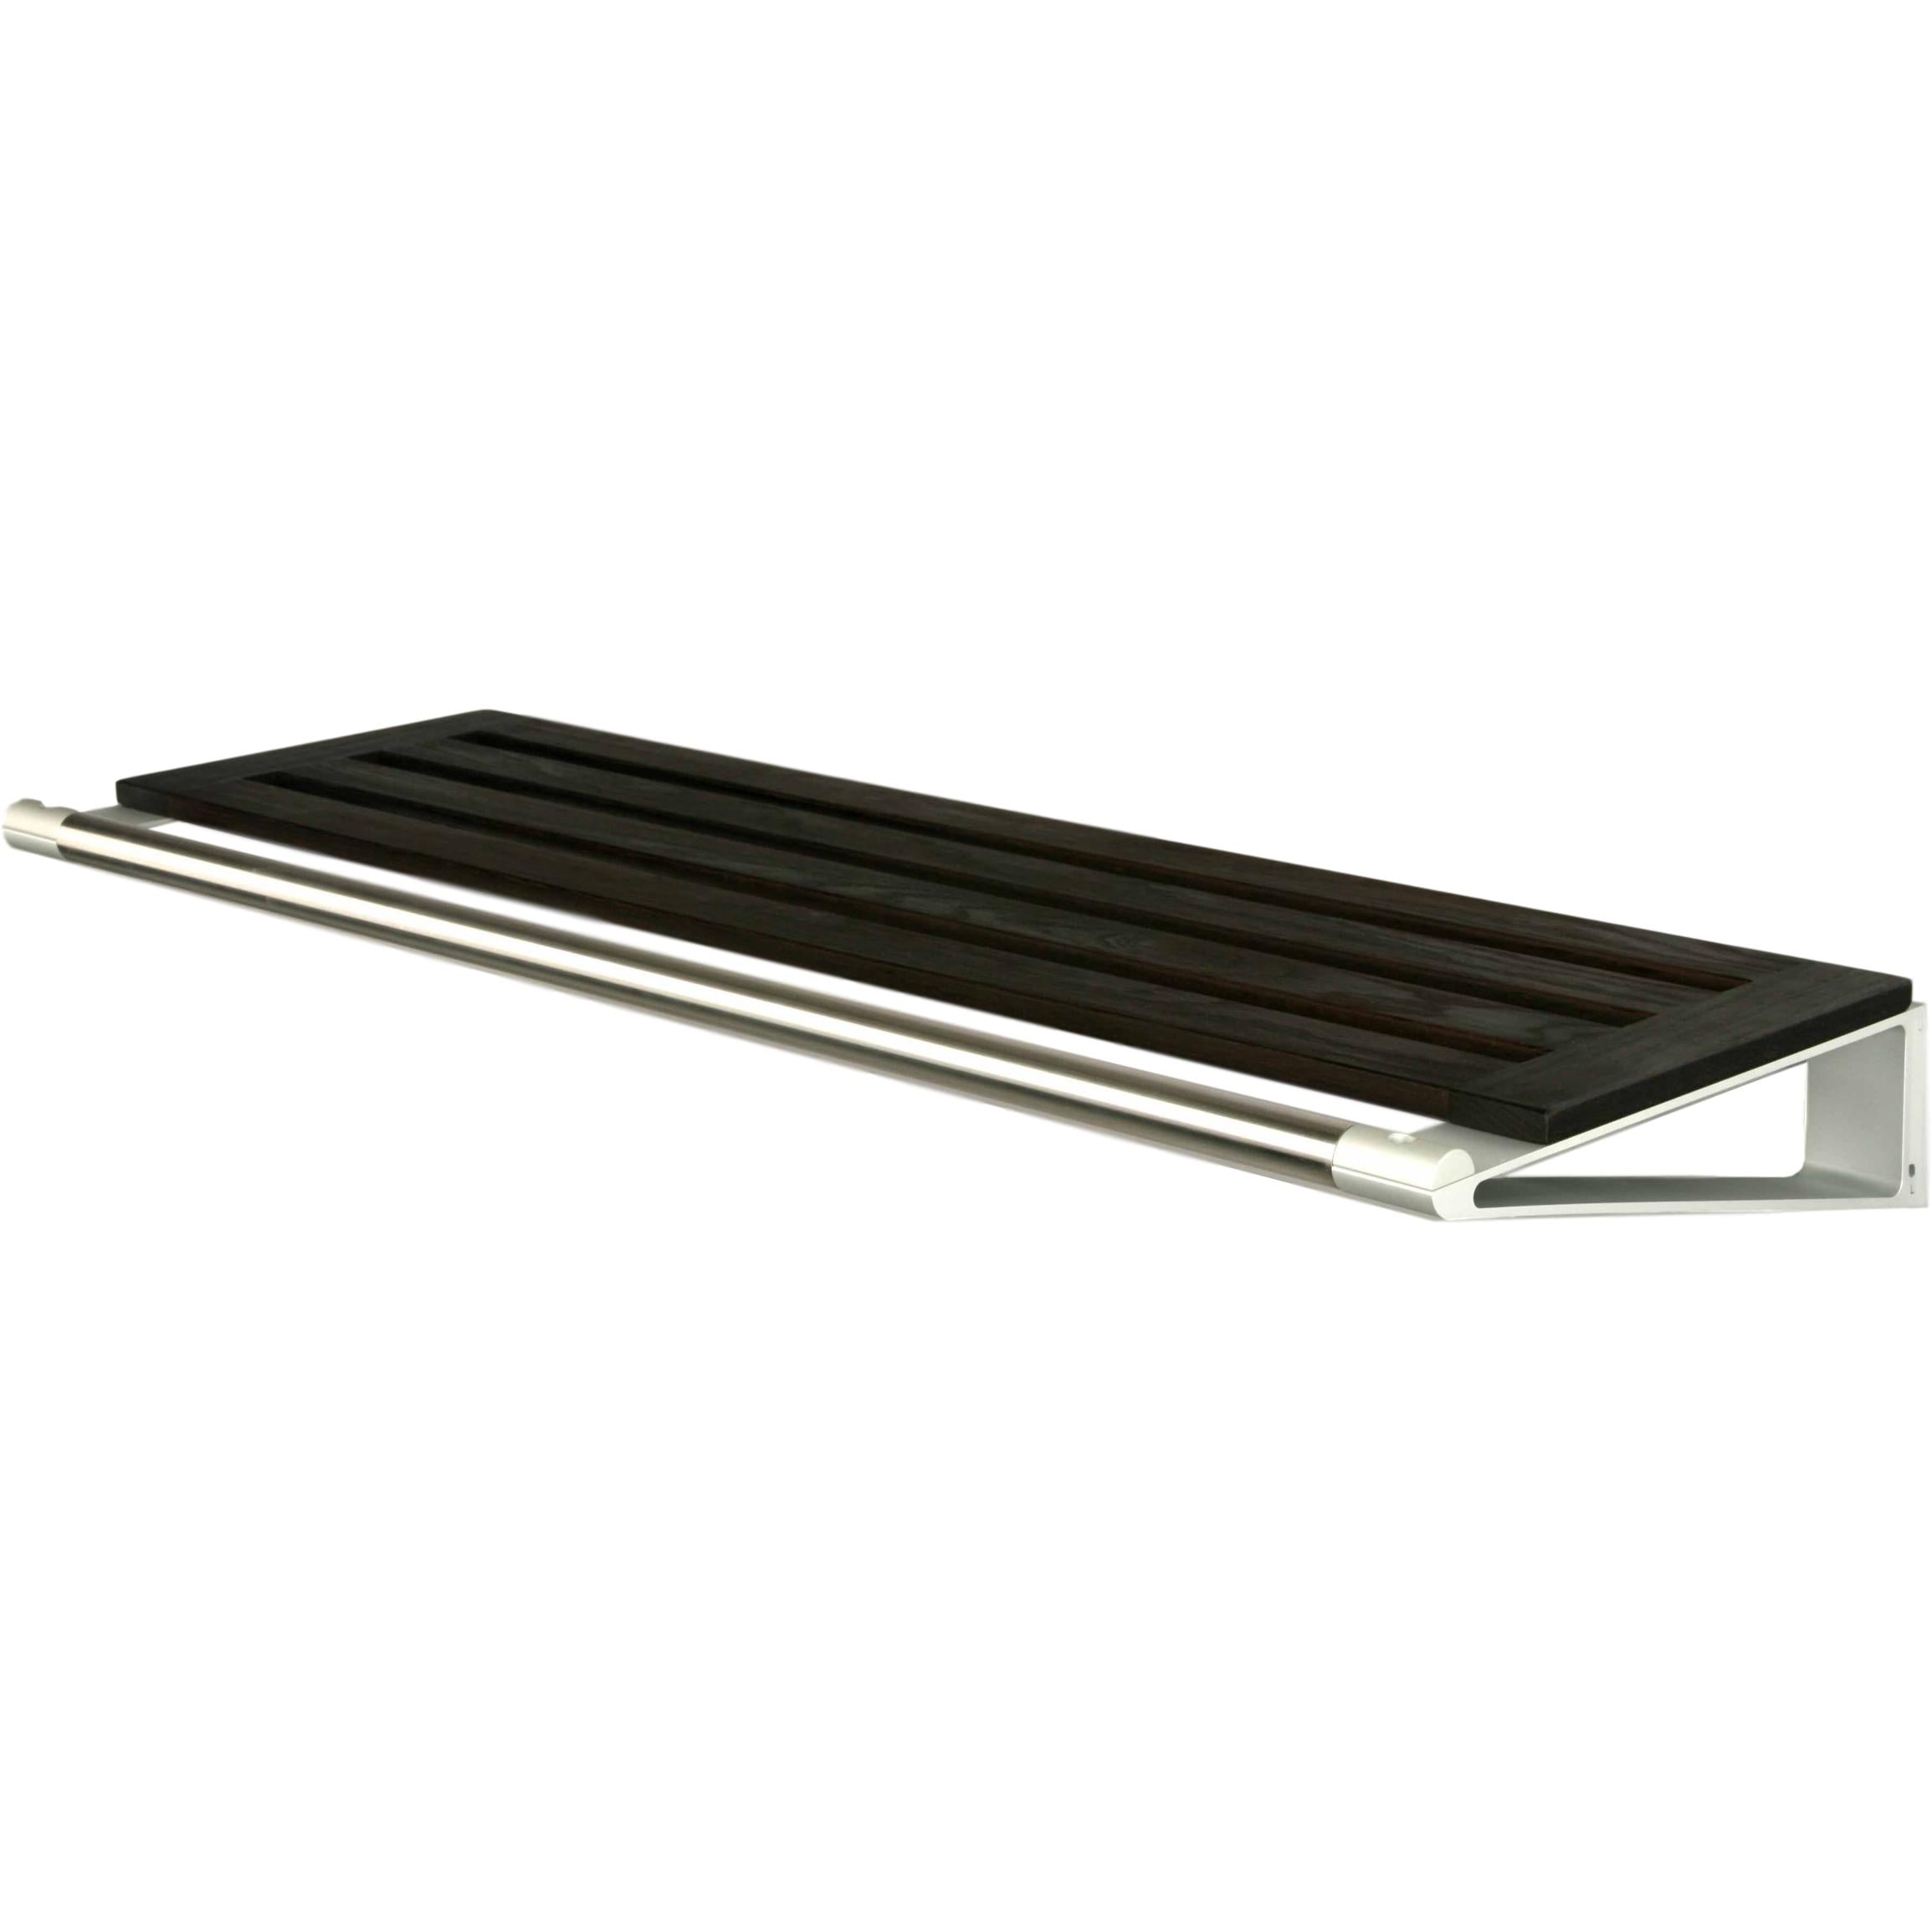 Loca Knax Hat Shelf 60 cm, quercia tabac/alluminio